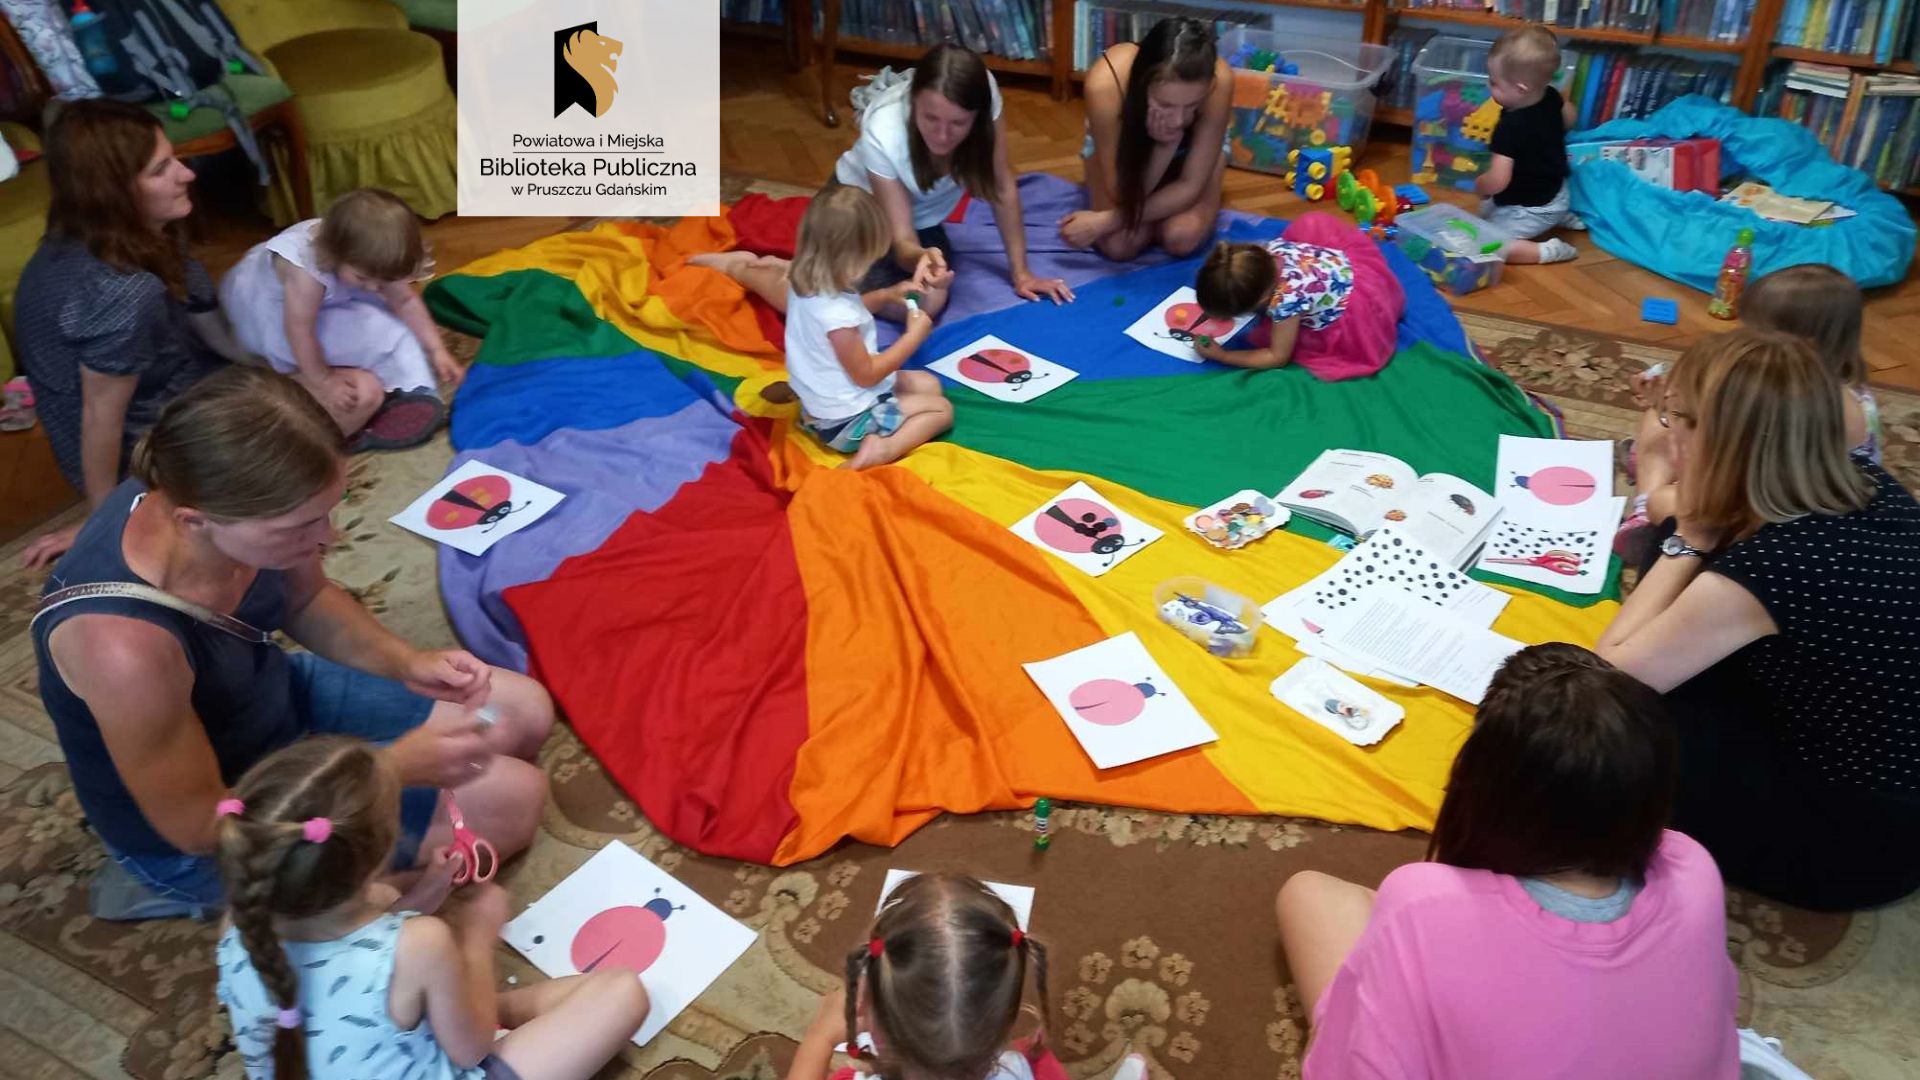 Wokół kolorowej chusty siedzą dzieci z mamami. Na chuście leżą obrazki z biedronkami. przy regałach z książkami stoją pudła z zabawkami.